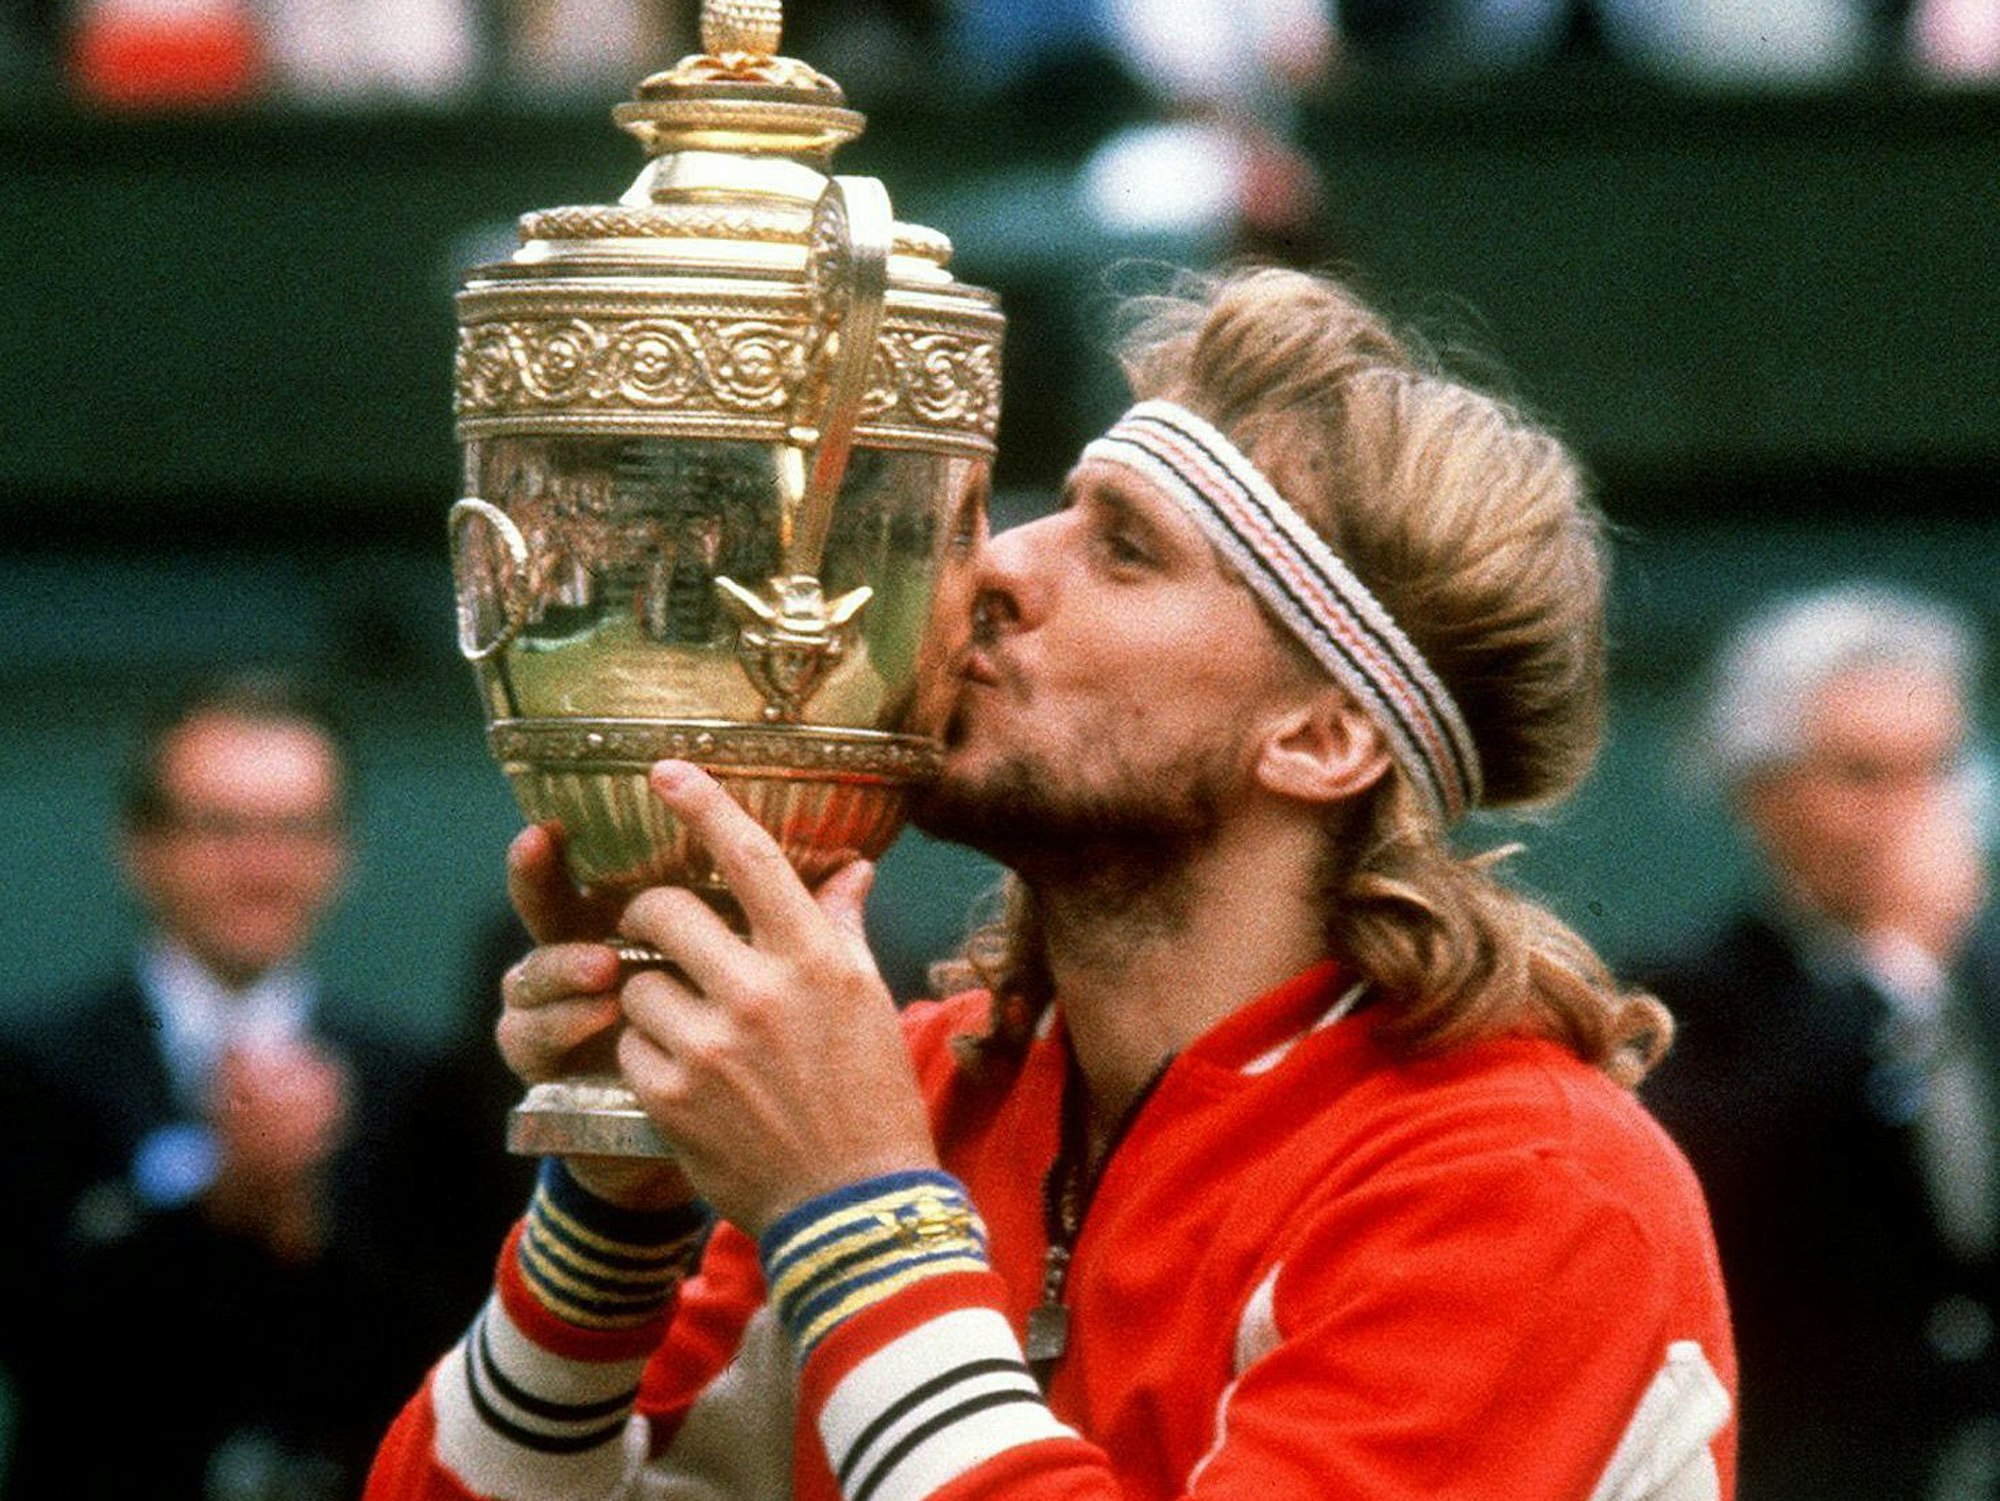 Björn Borg küsst die Wimbledon-Trophäe. Er trägt eine rote Trainingsjacke, ein gestreiftes Stirnband bändigt die langen Haare.